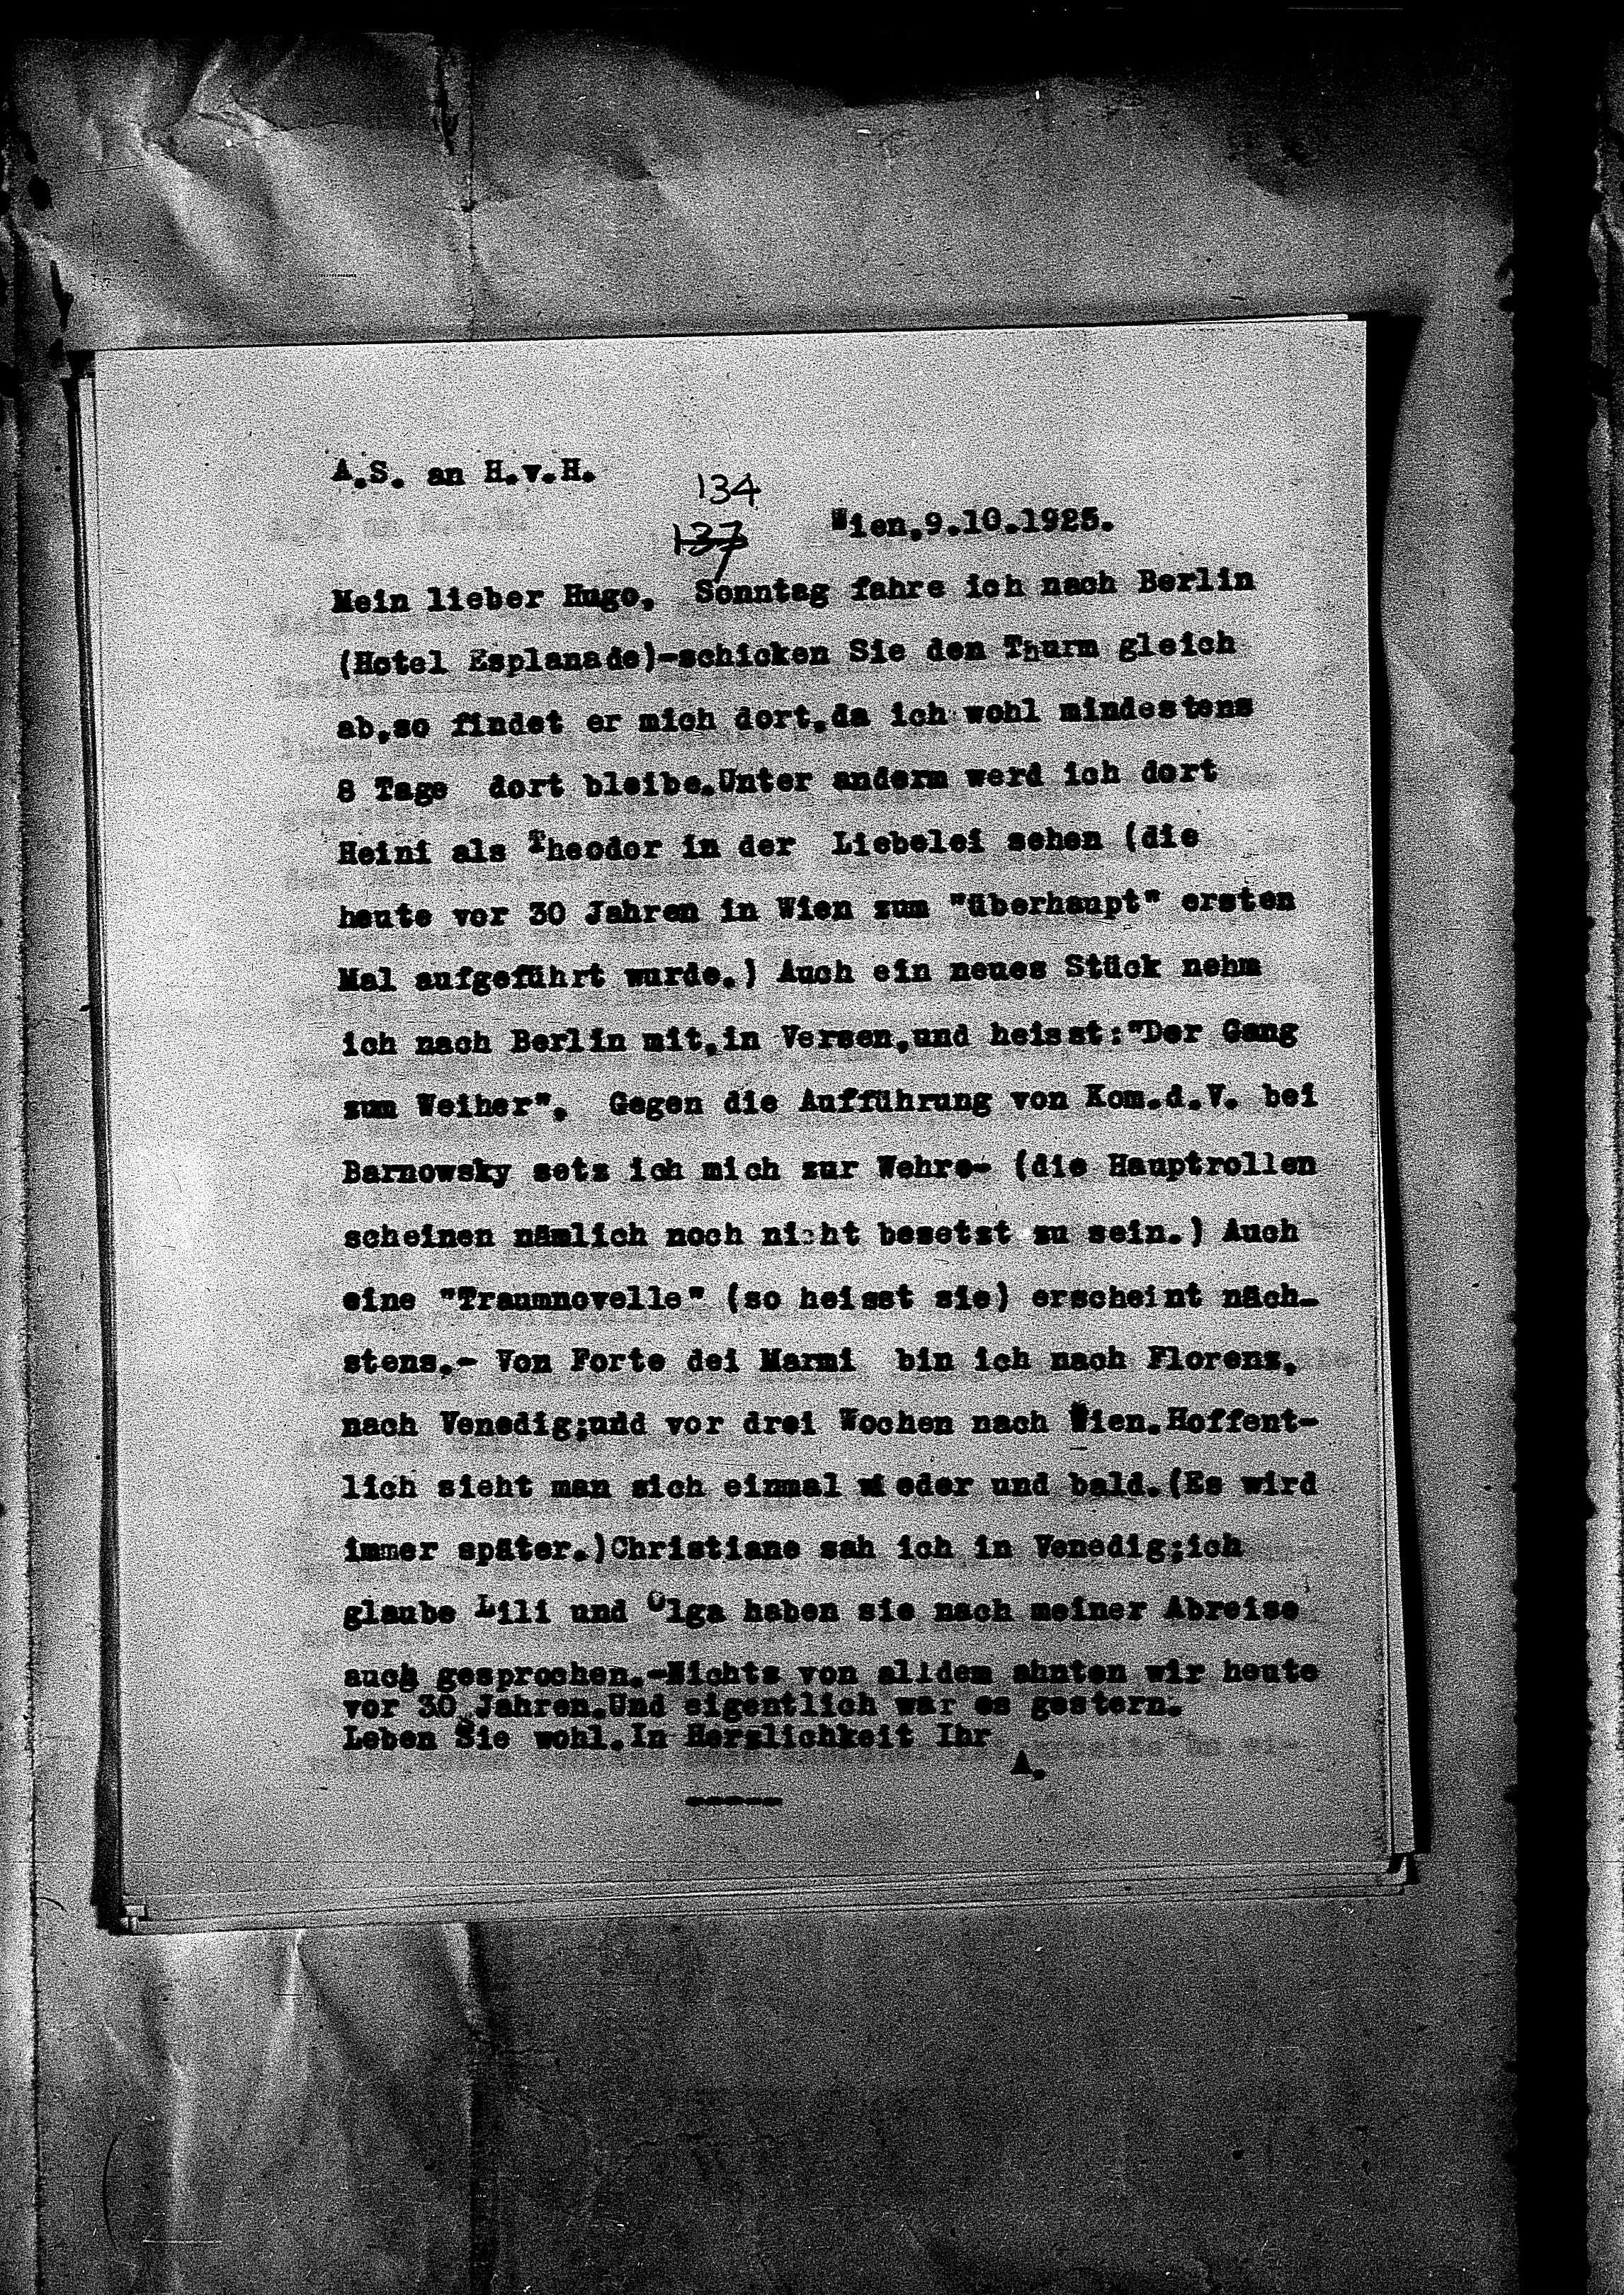 Vorschaubild für Hofmannsthal, Hugo von_AS an HvH Abschrift, HvH an AS, Originale (Mikrofilm 38), Seite 211